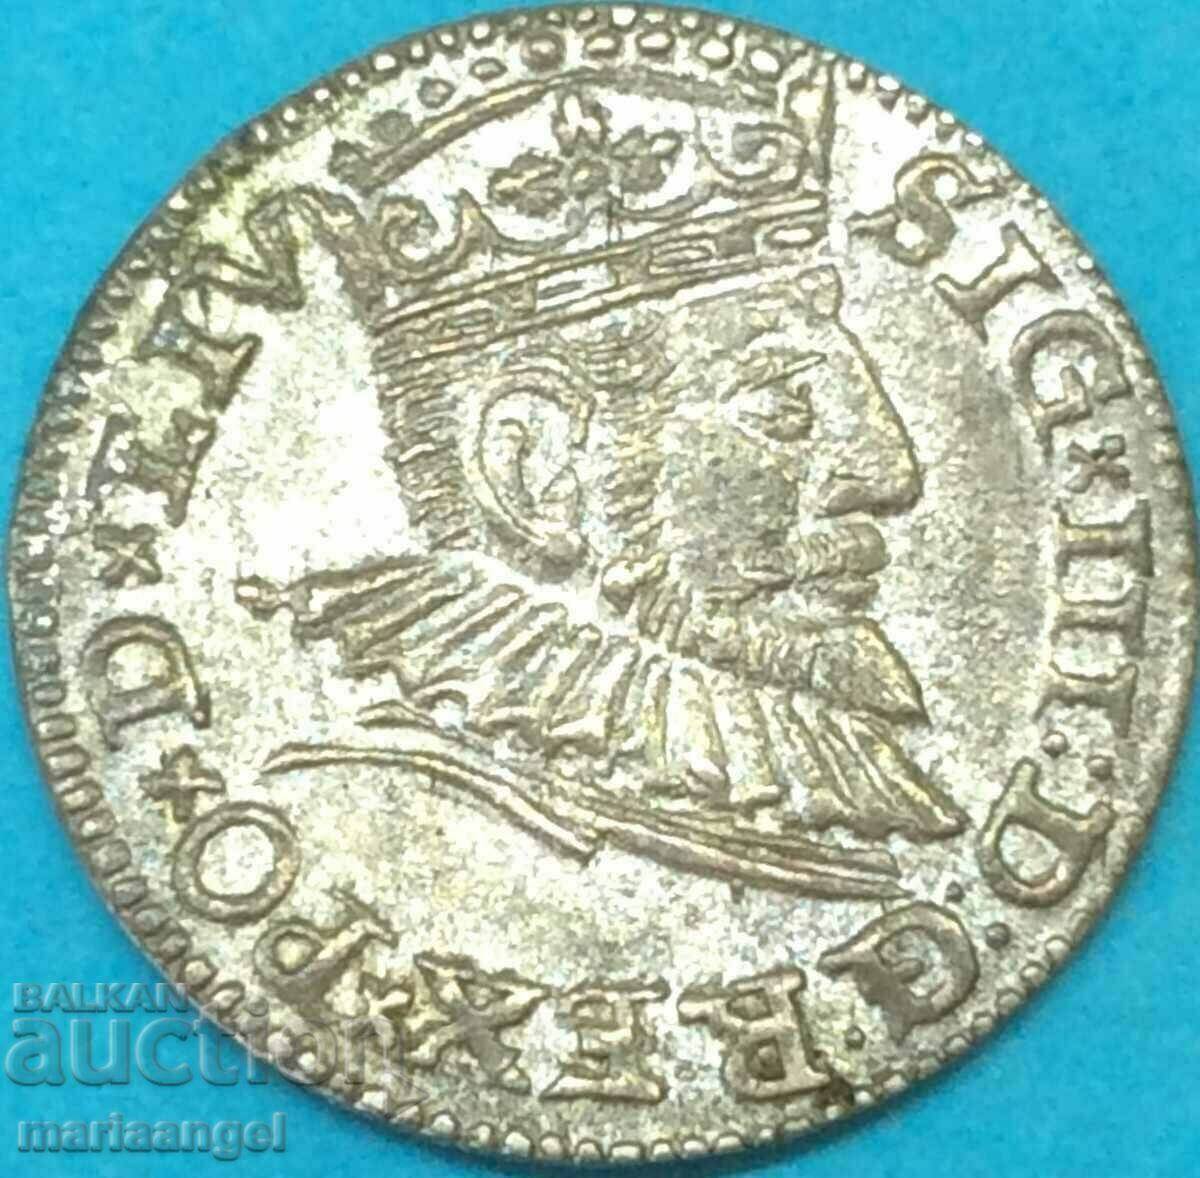 Πολωνία 3 groszy (τρόικα) 1593 Sigismund III ασήμι - σπάνιο